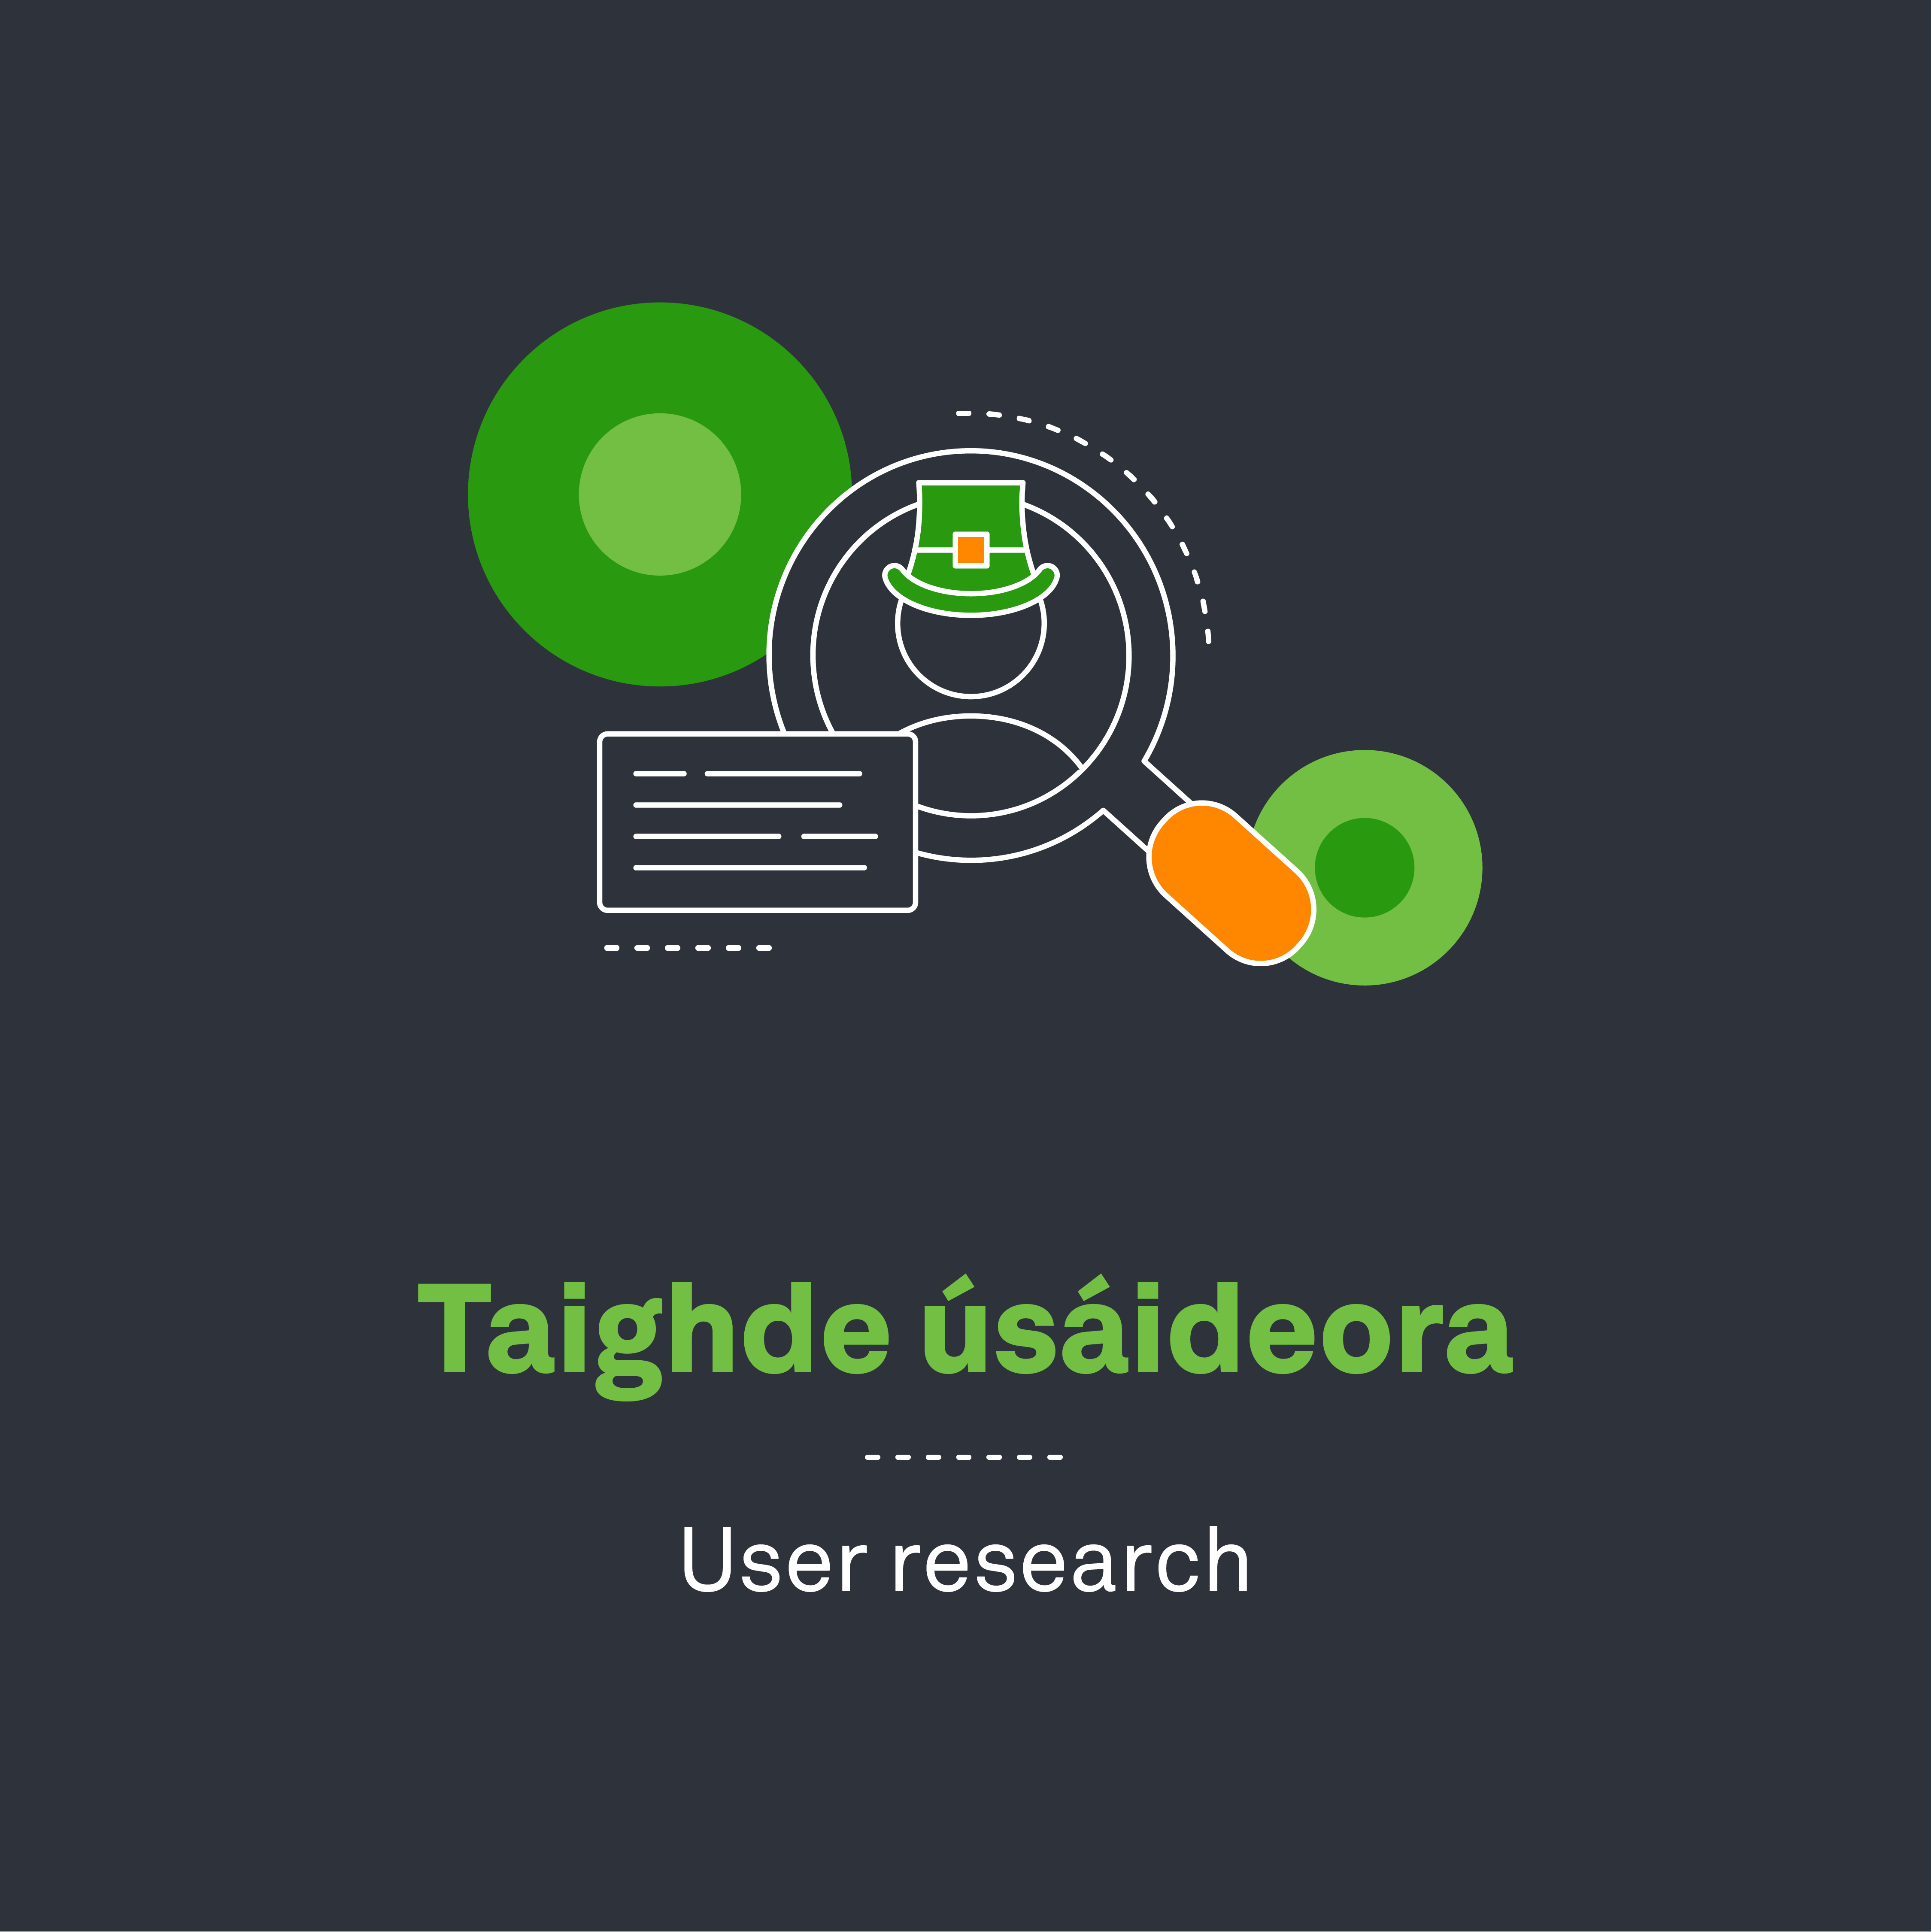 user research in irish